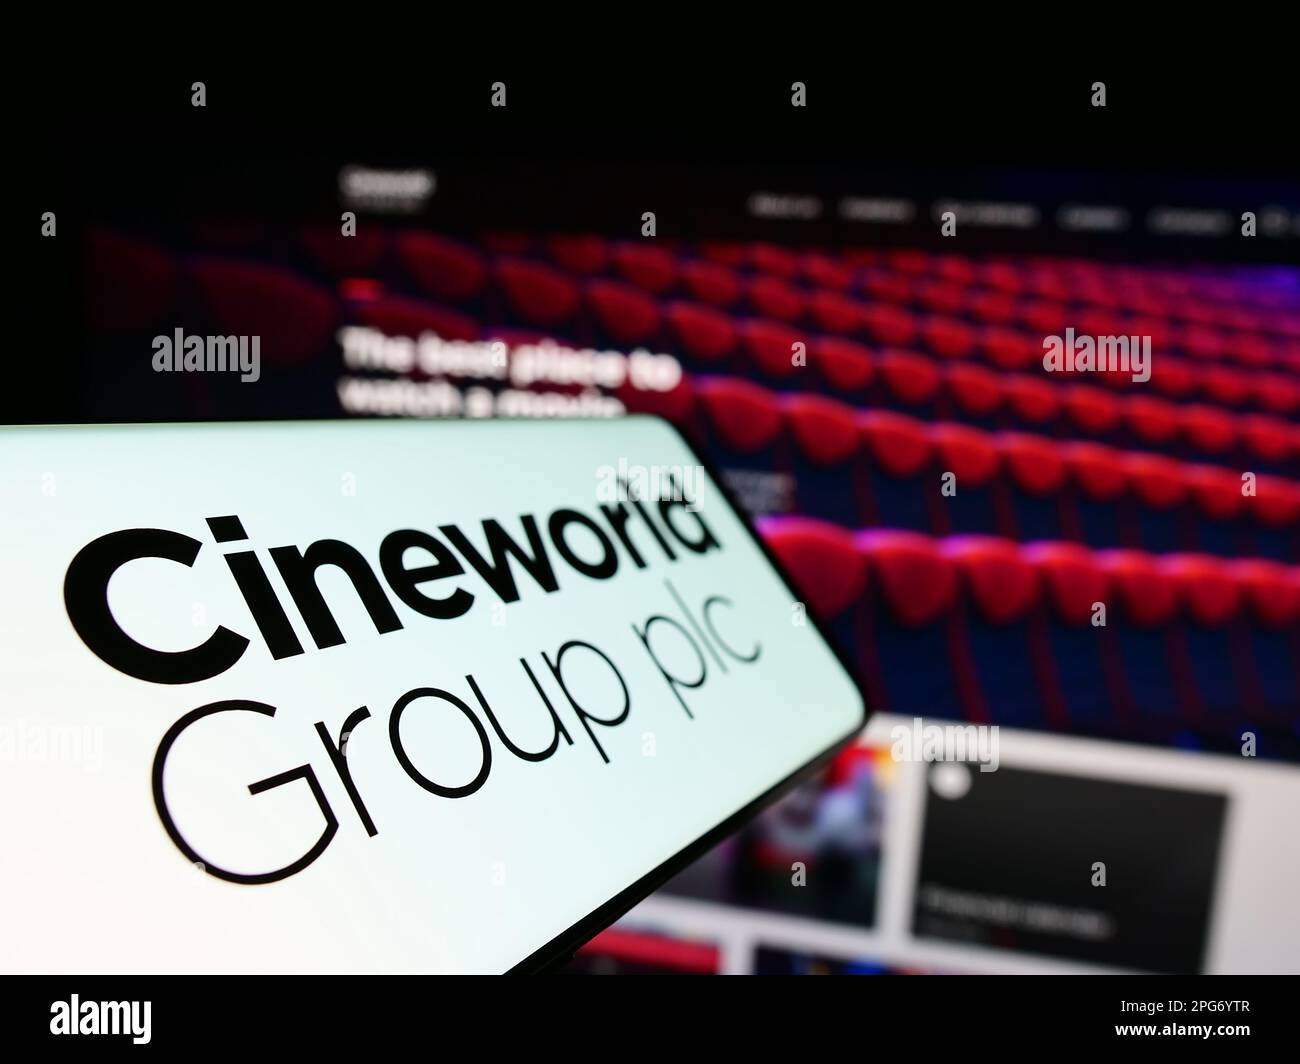 Cellulare con logo della società cinematografica britannica Cineworld Group plc sullo schermo di fronte al sito web aziendale. Messa a fuoco a sinistra del display del telefono. Foto Stock